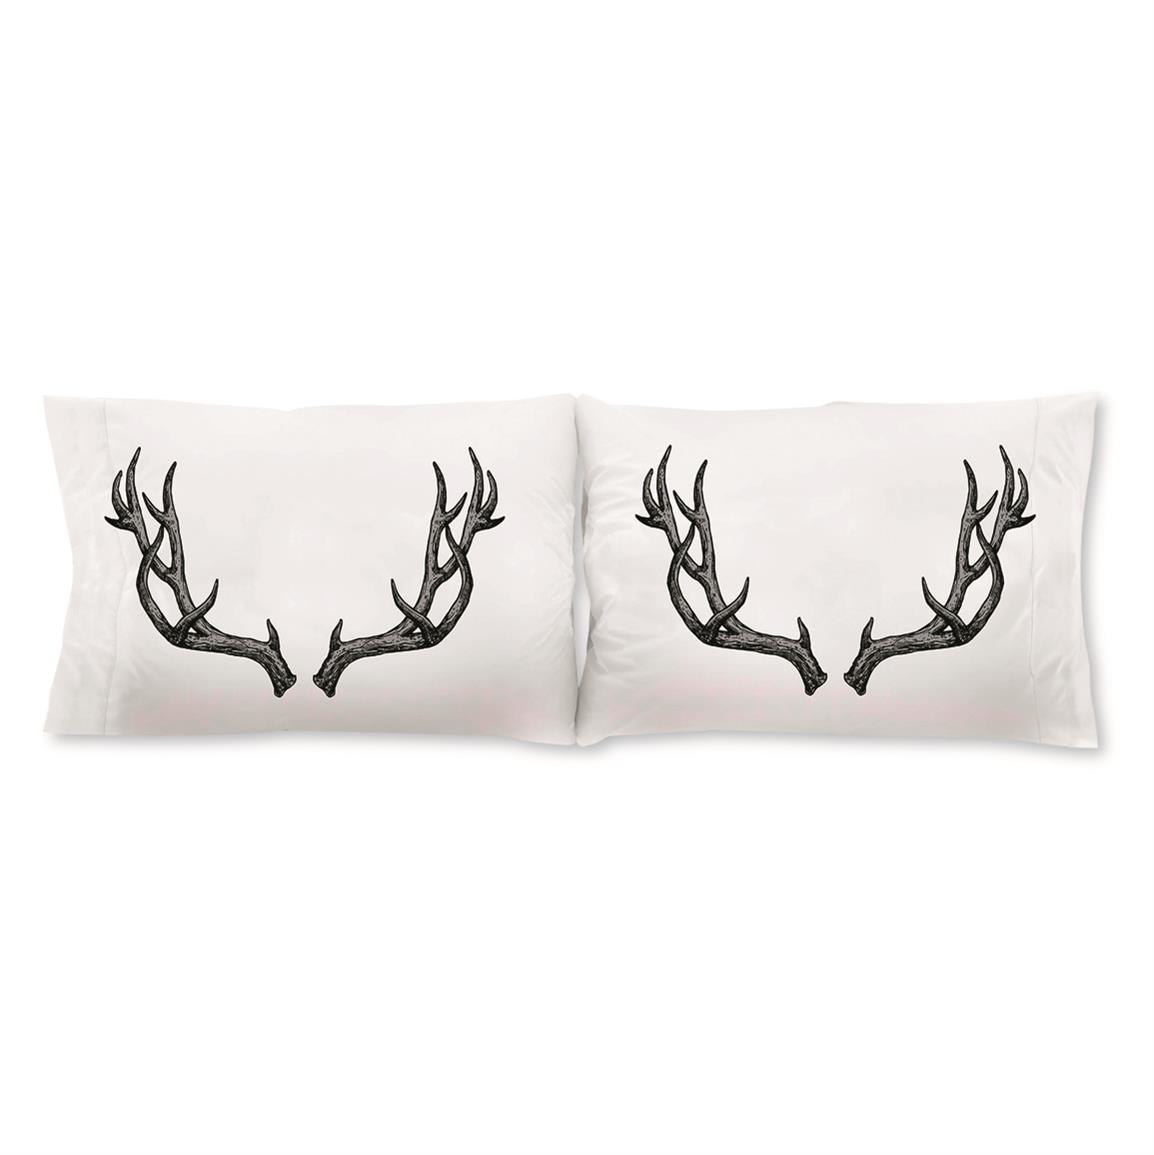 Safdie & Co.Printed Pillowcase, 2 Pack, Antlers